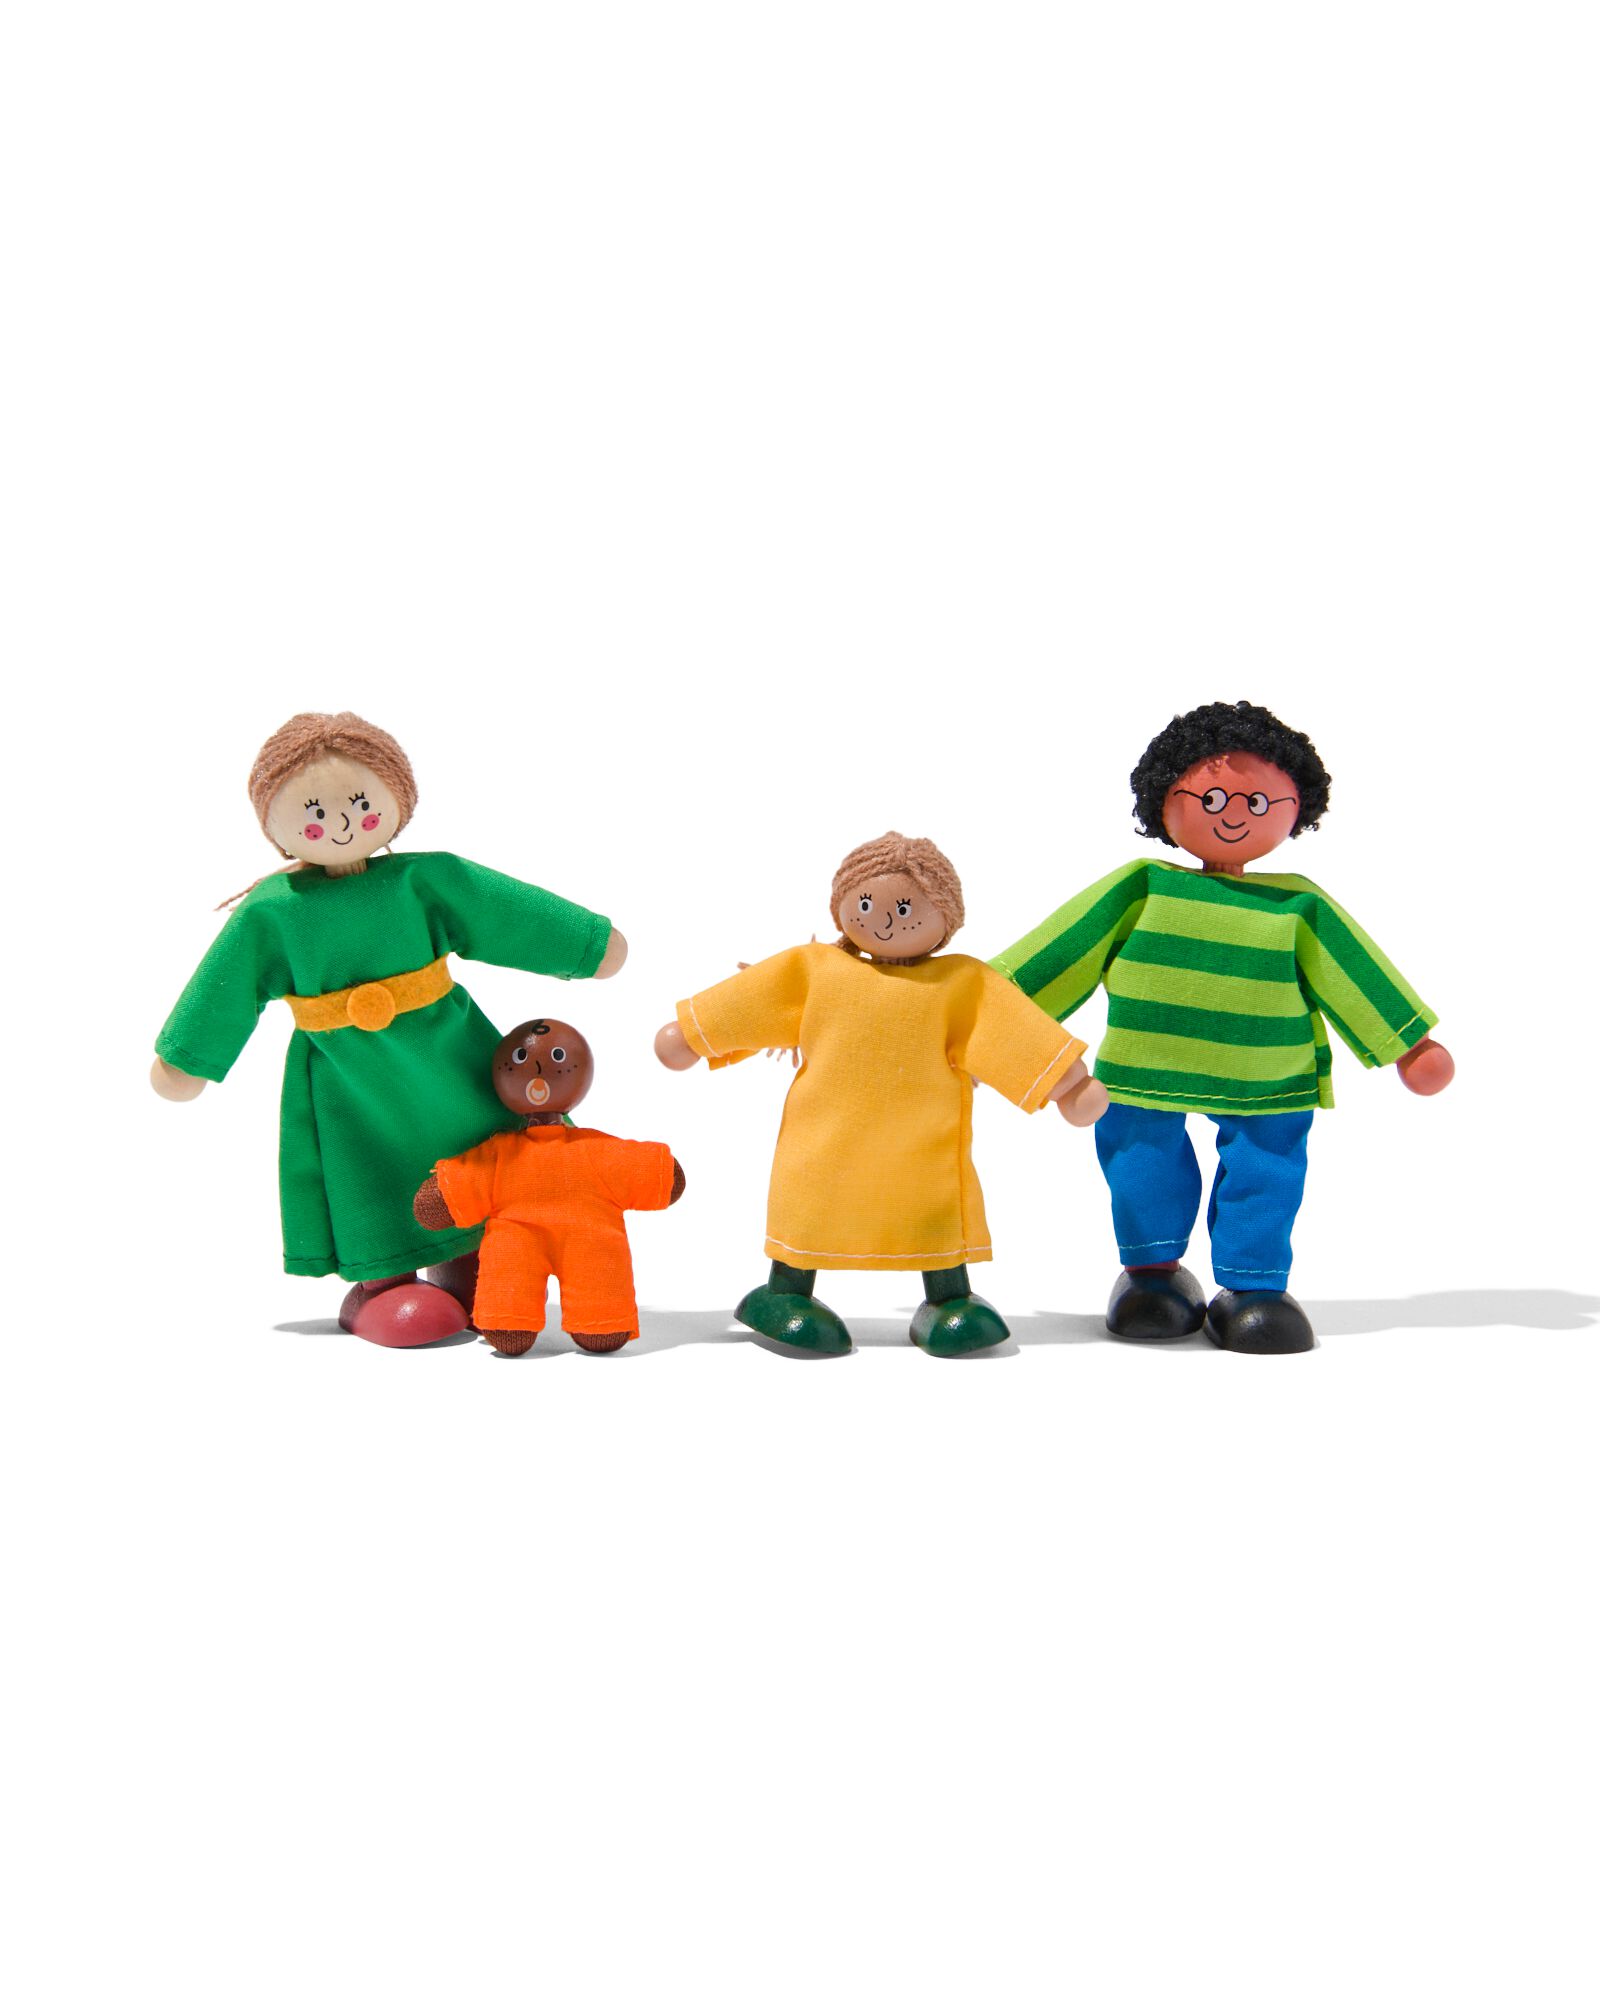 famille de 4 poupées en bois pour maison de poupées - HEMA